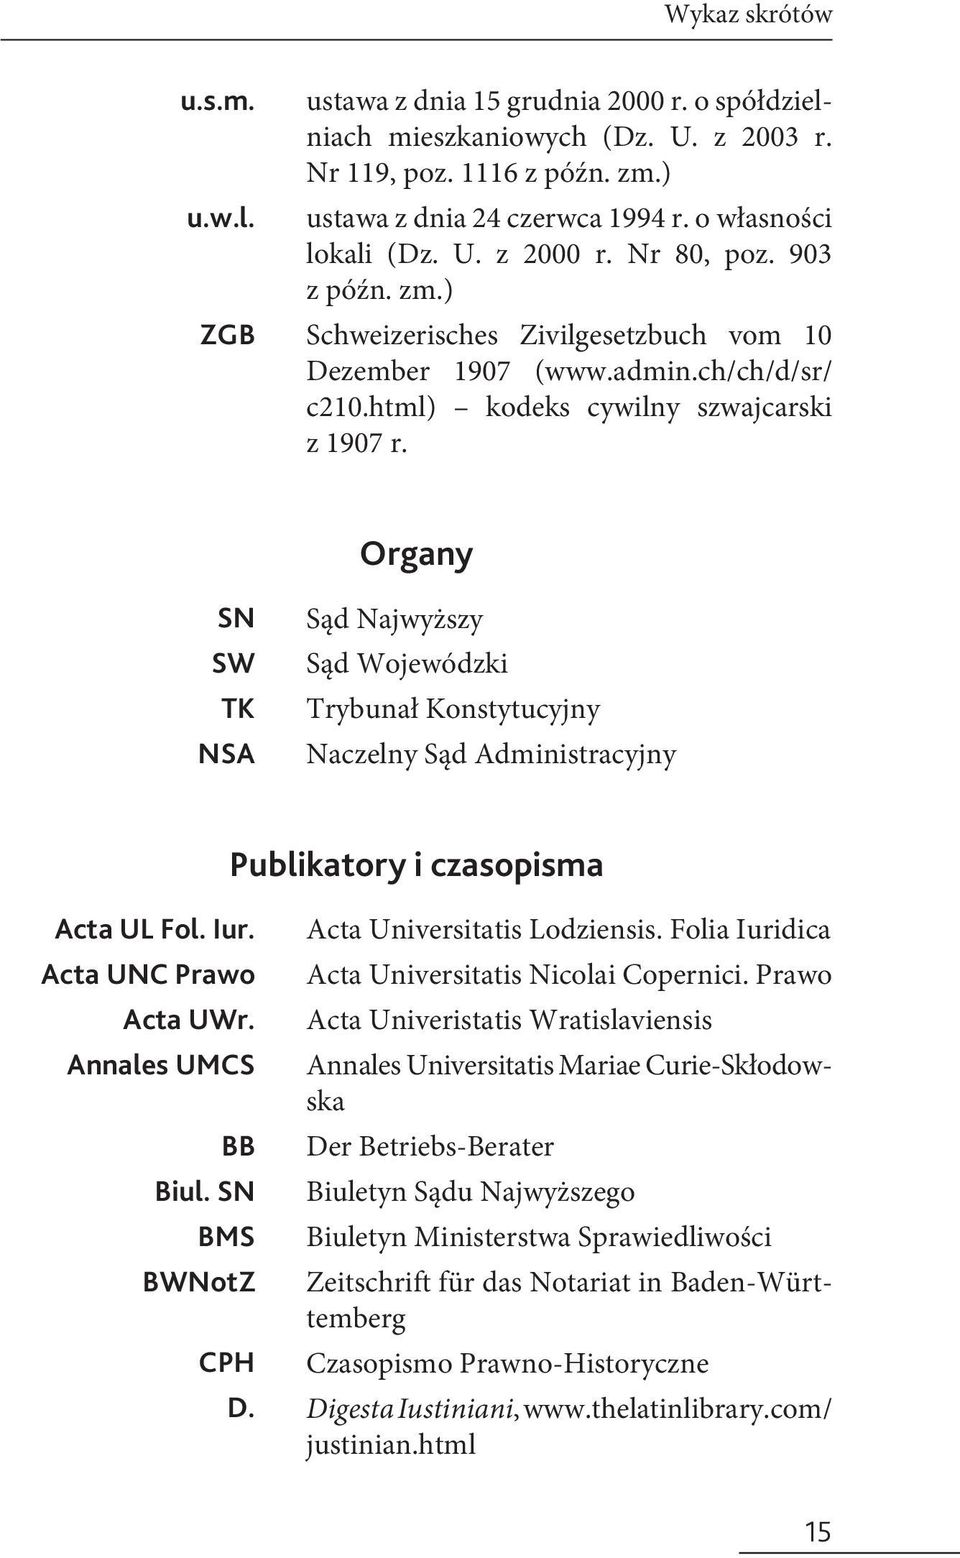 Organy SN SW TK NSA Sąd Najwyższy Sąd Wojewódzki Trybunał Konstytucyjny Naczelny Sąd Administracyjny Publikatory i czasopisma Acta UL Fol. Iur. Acta UNC Prawo Acta UWr. Annales UMCS BB Biul.